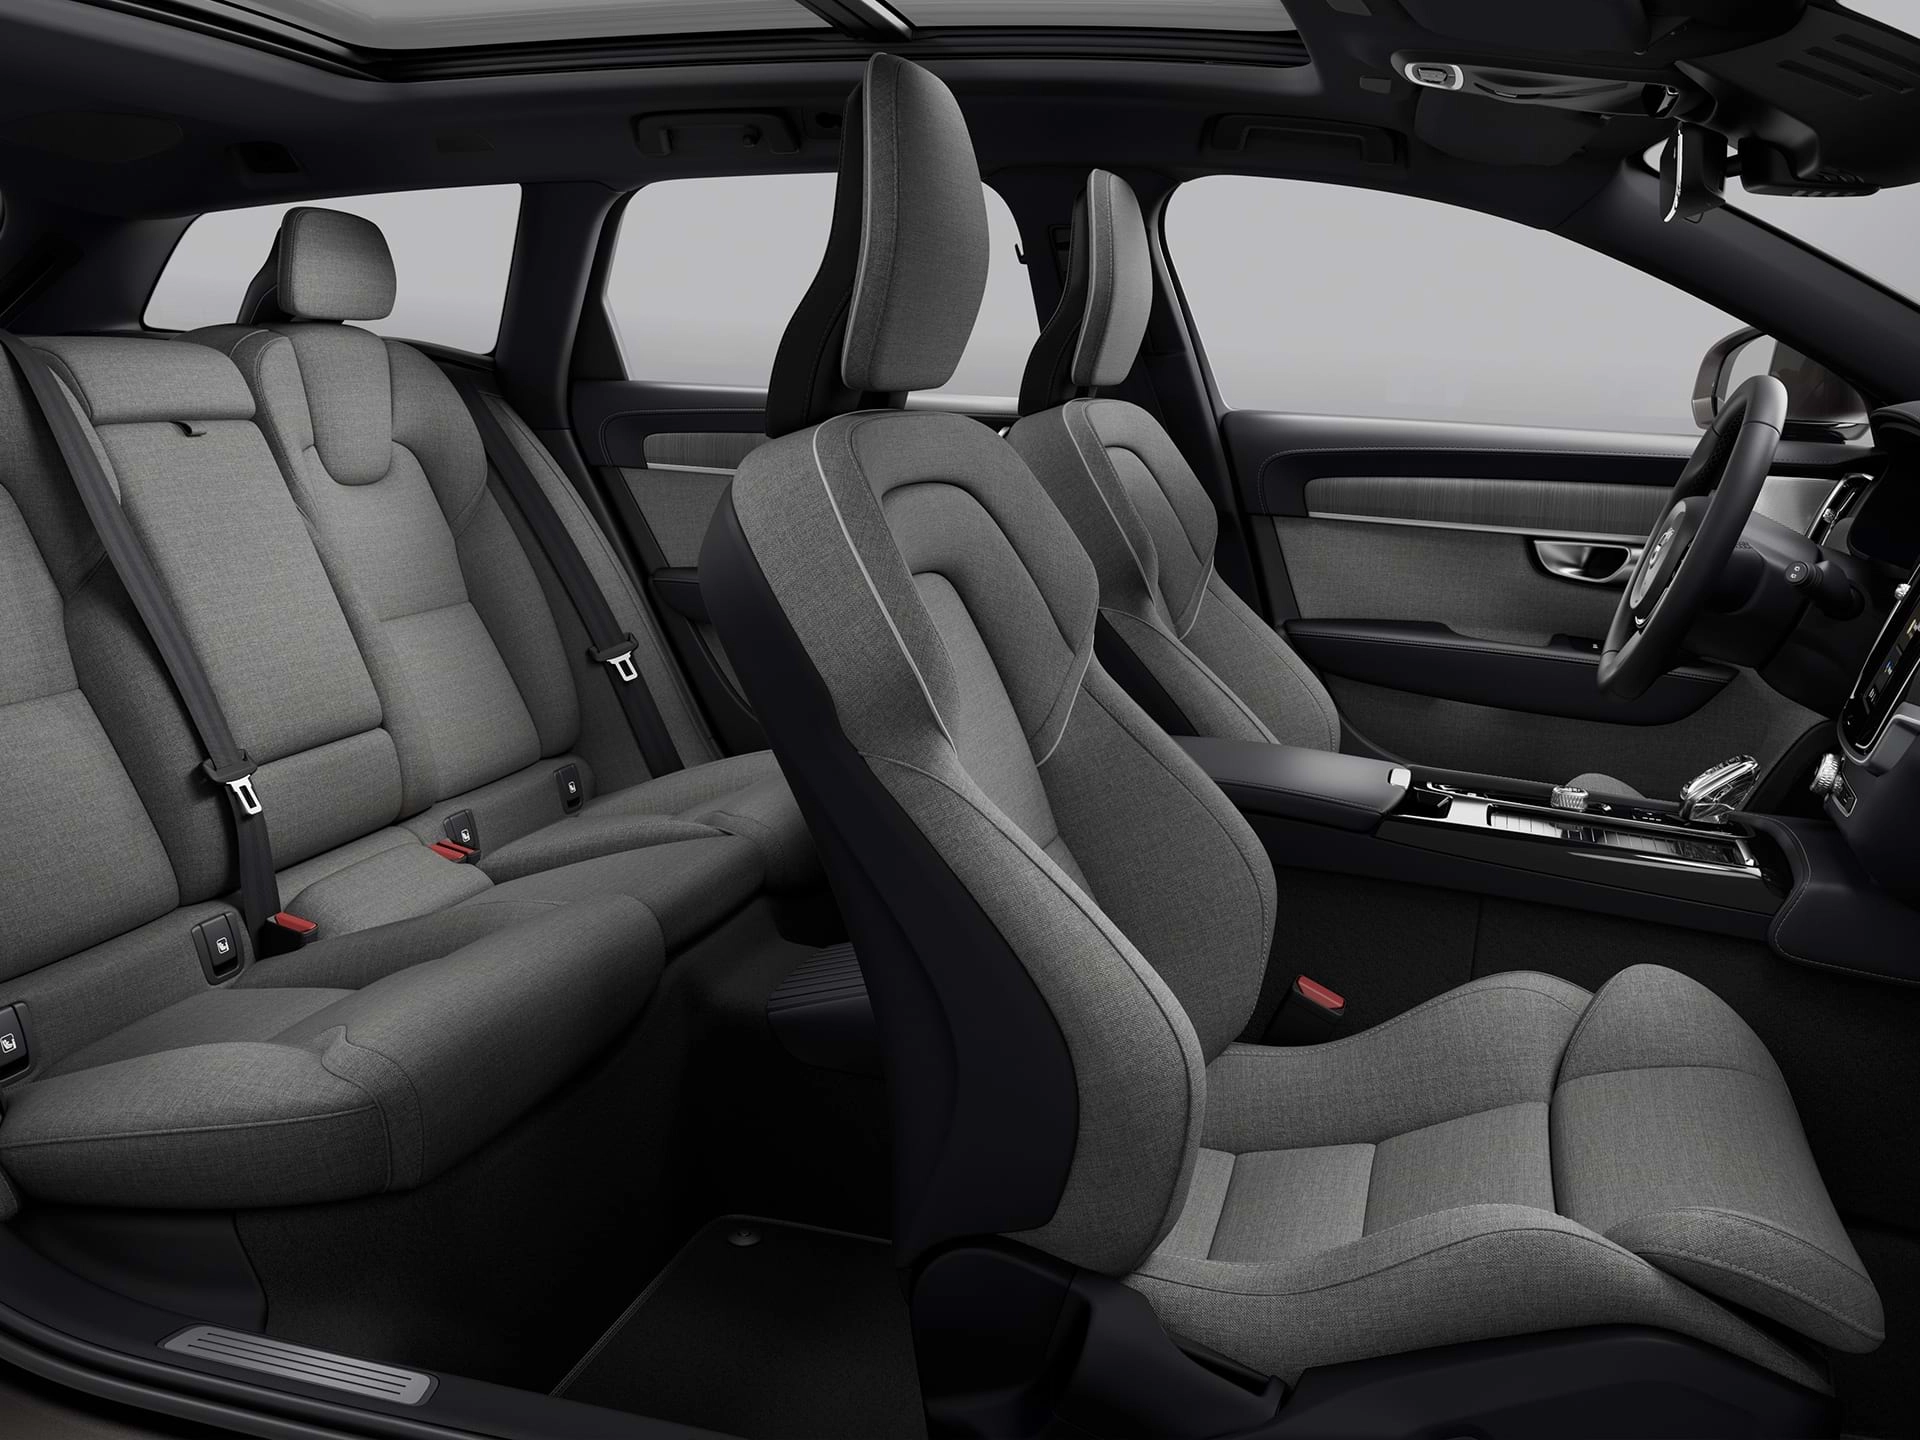 Volvo 스테이션 웨건 자동차의 넓은 캐빈에 있는 천으로 덮힌 4개 좌석의 광각 보기.